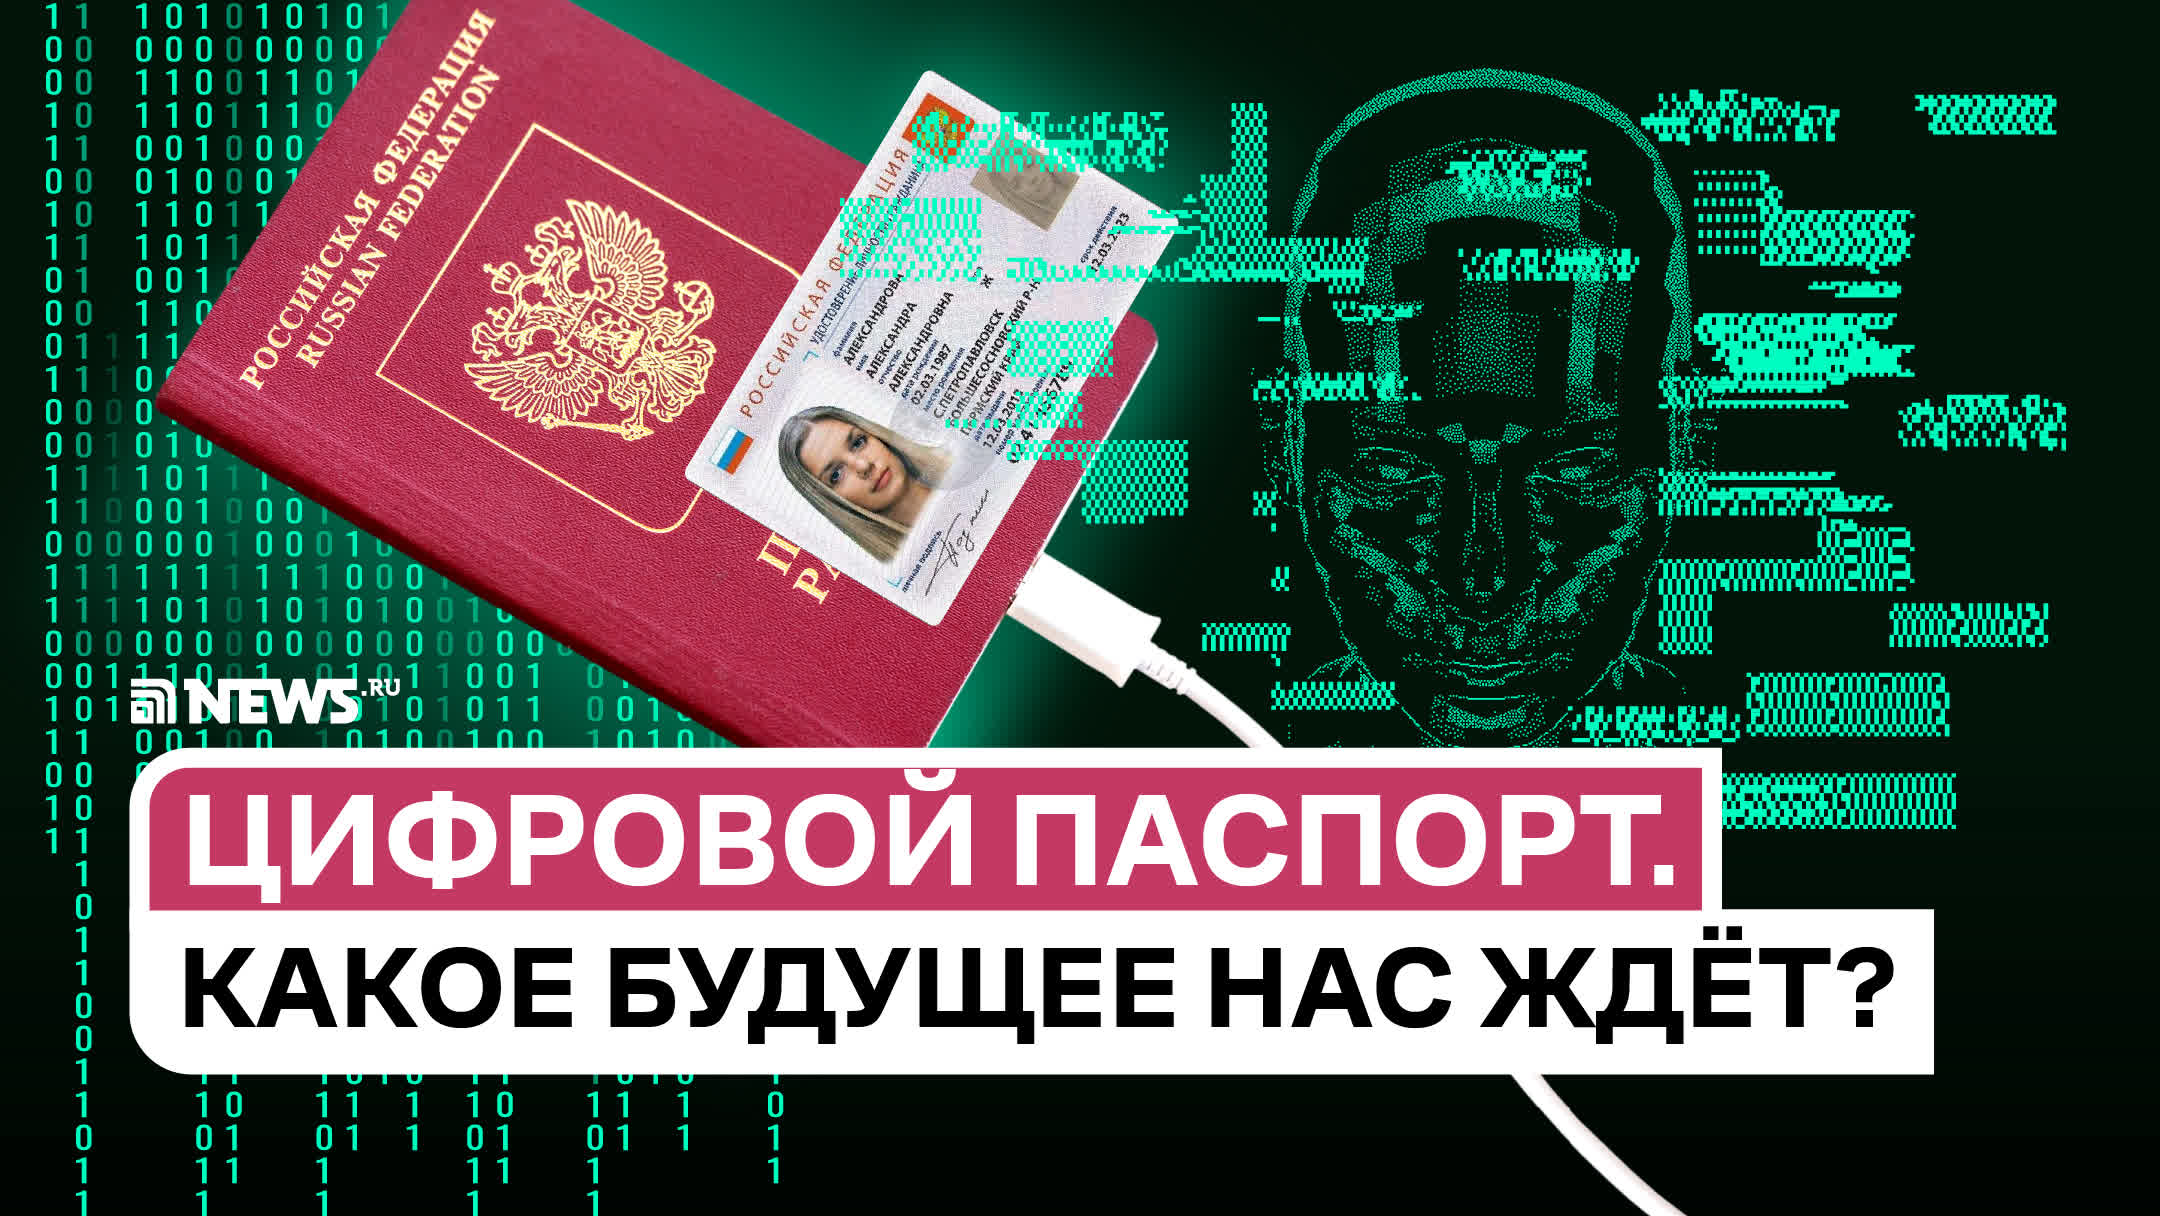 QR-код,  чип и биометрия: зачем Россия переходит на электронные паспорта